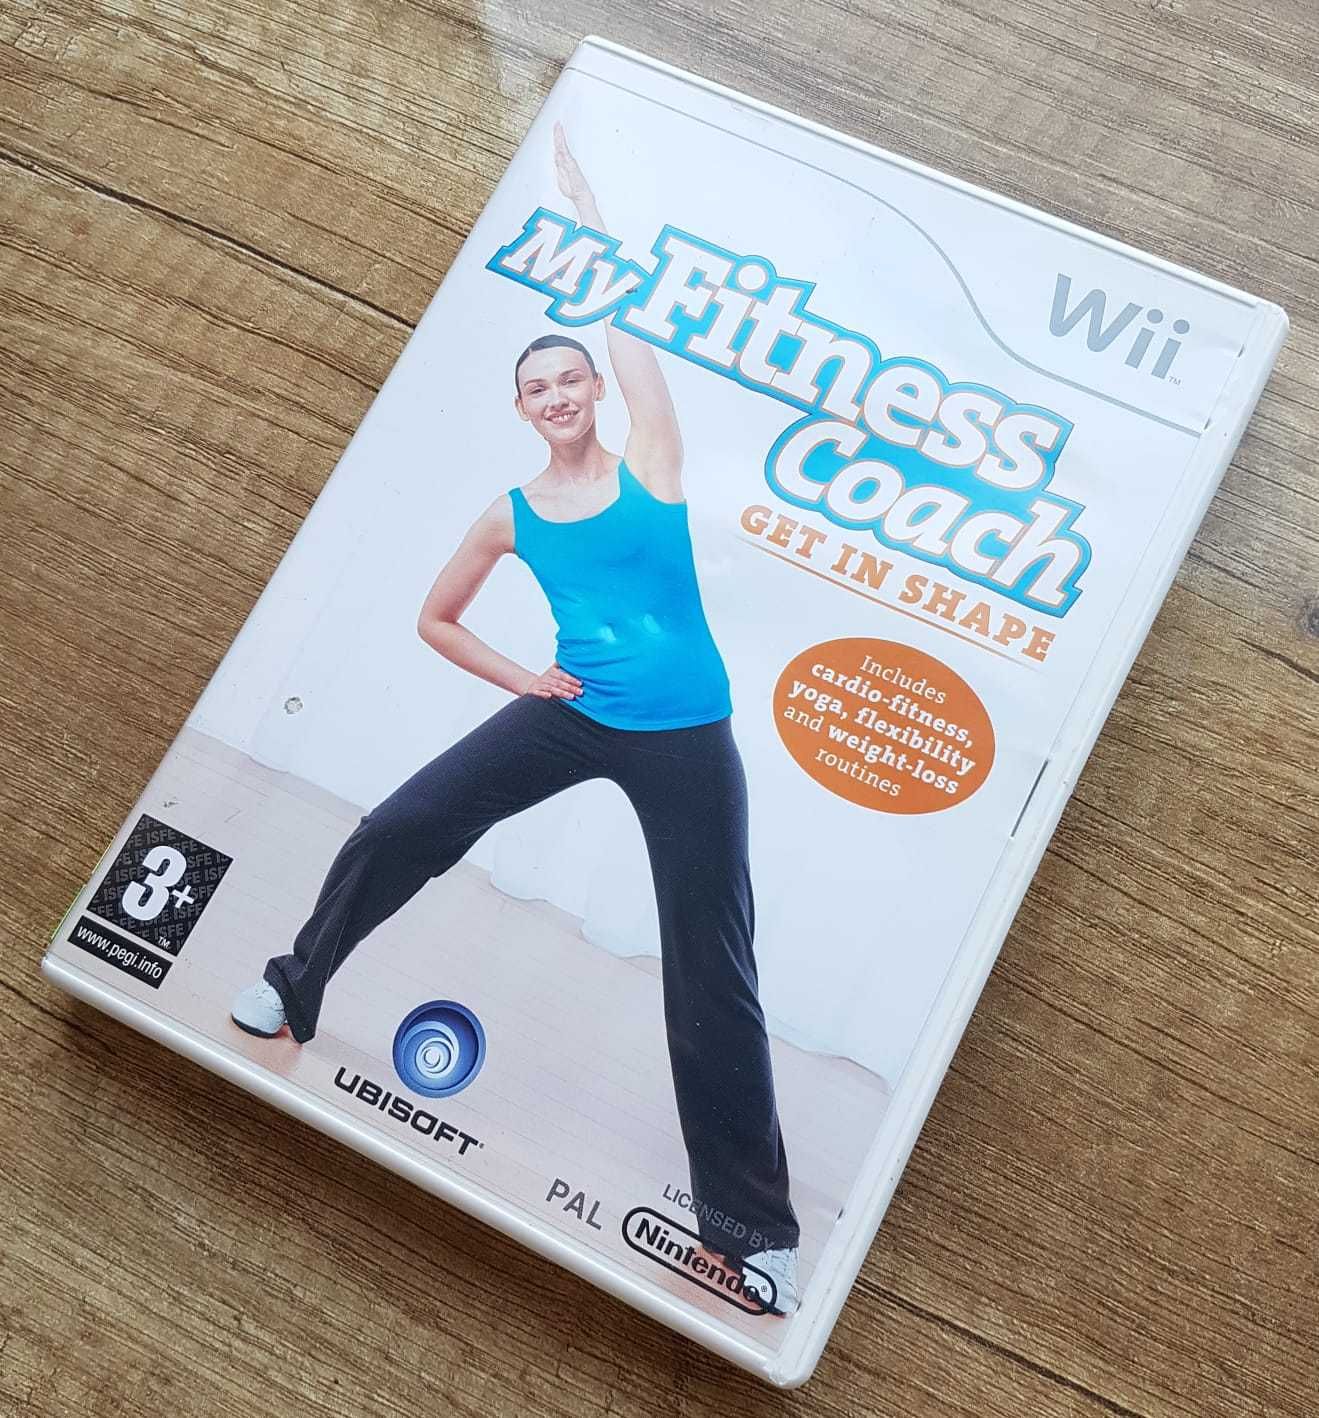 My Fitness Coach Shape gra prezent Nintendo Wii